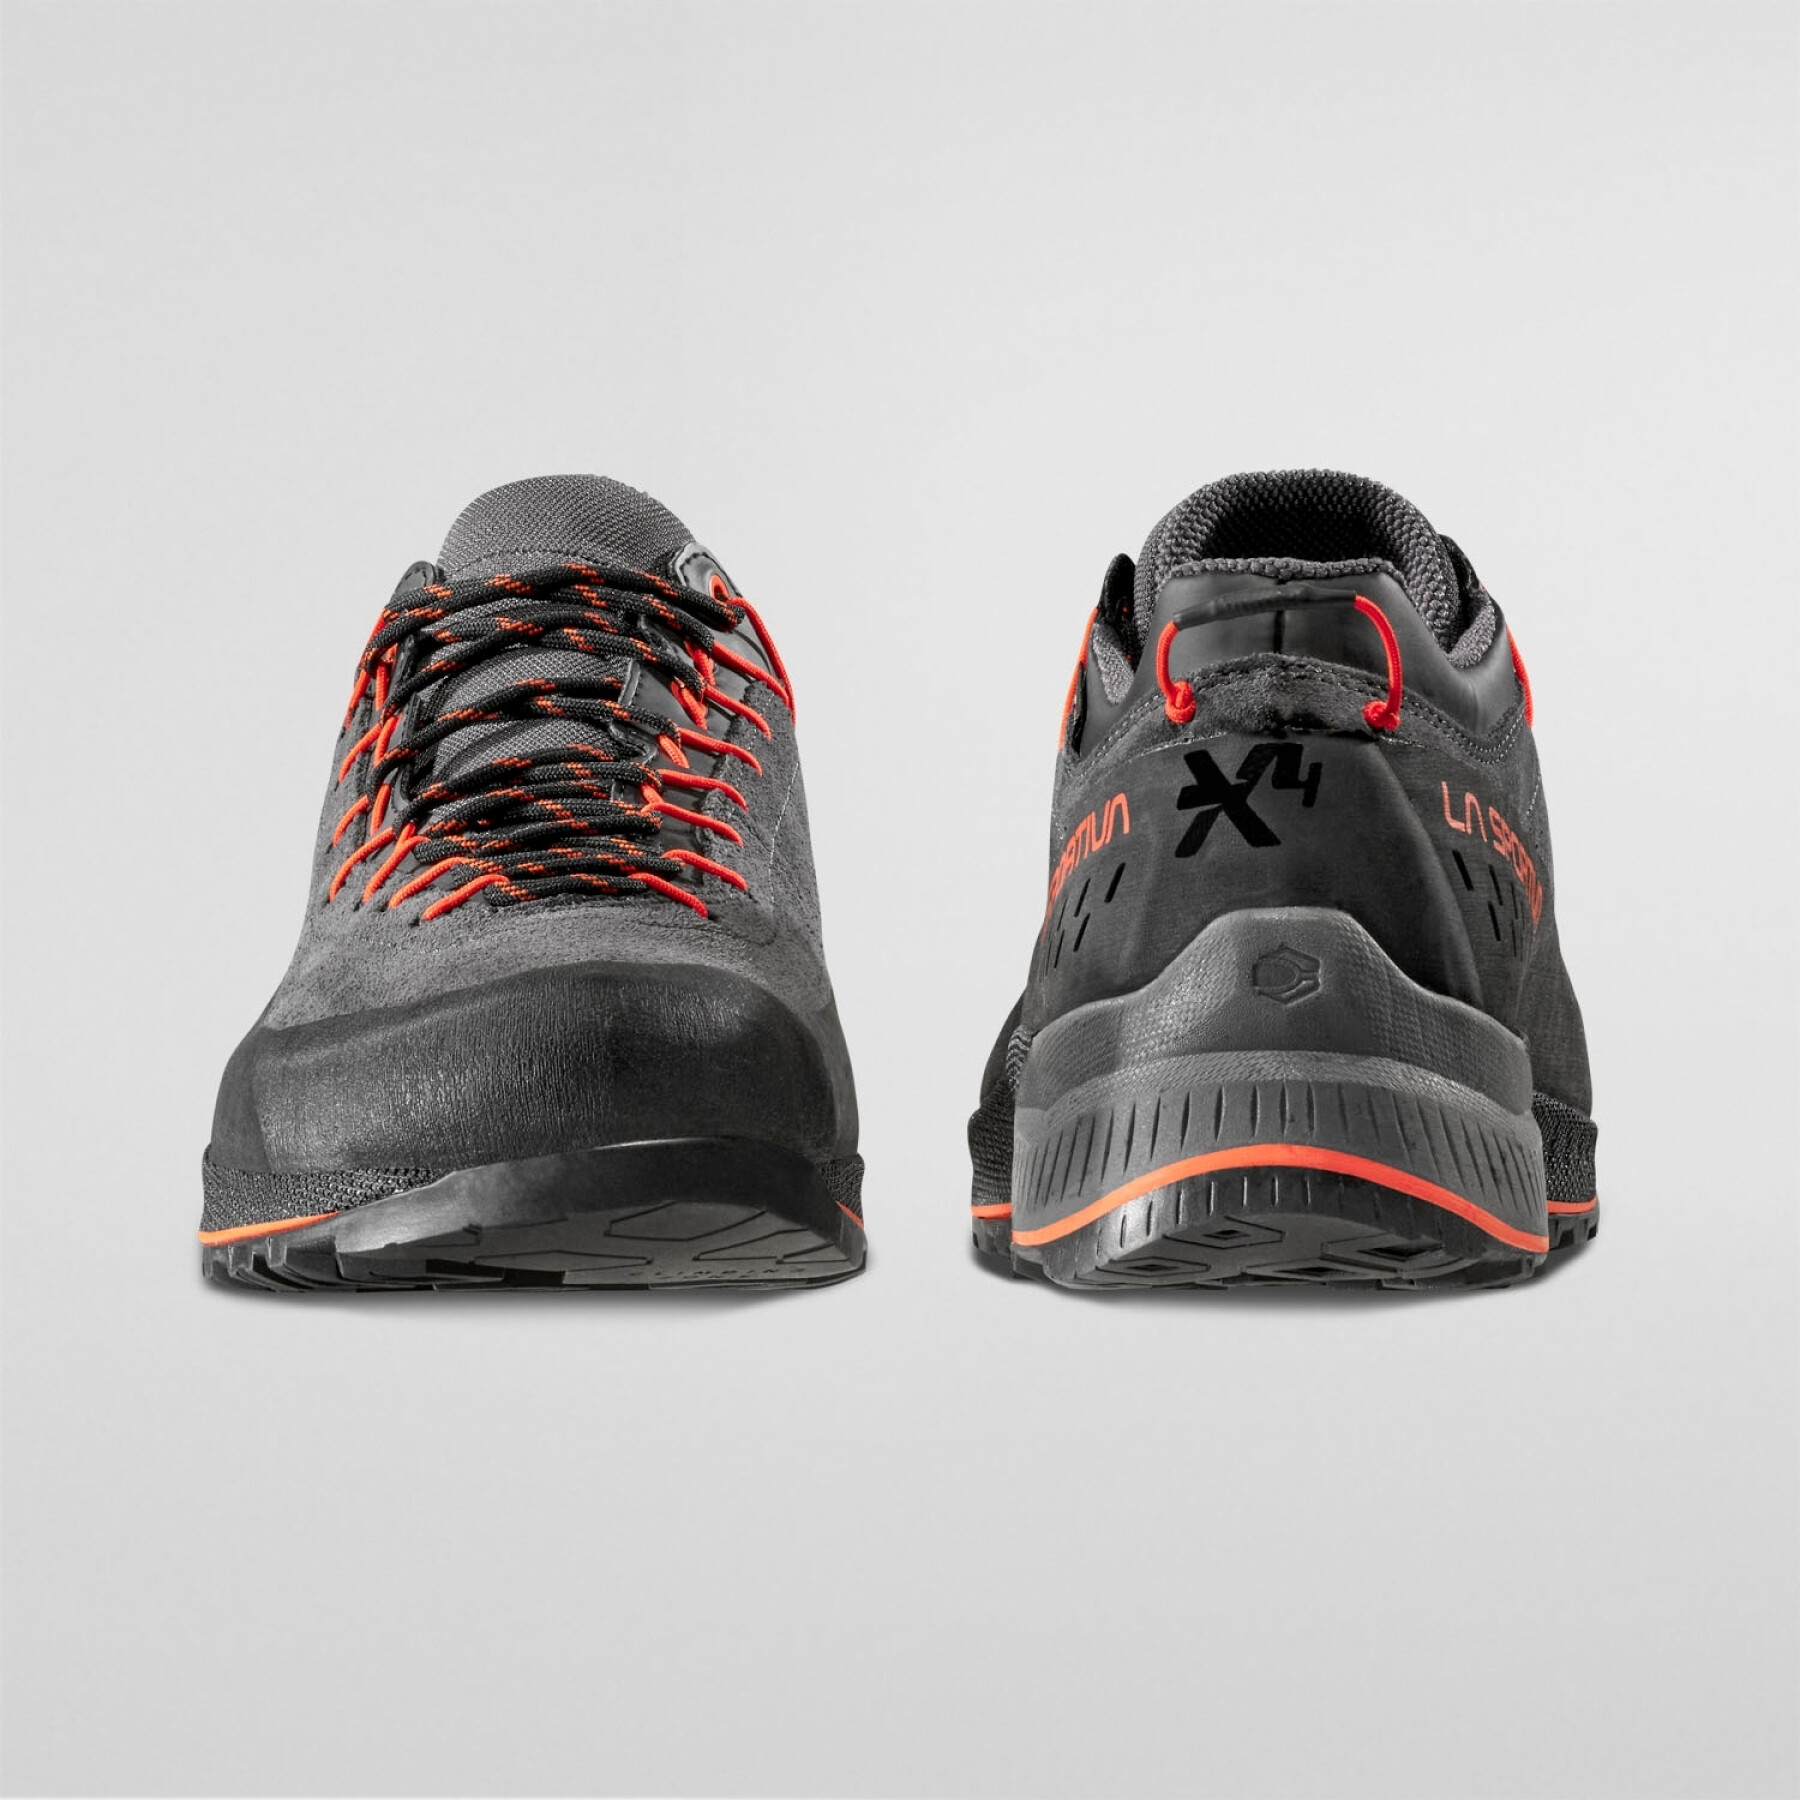 Hiking shoes La Sportiva TX4 Evo Gtx